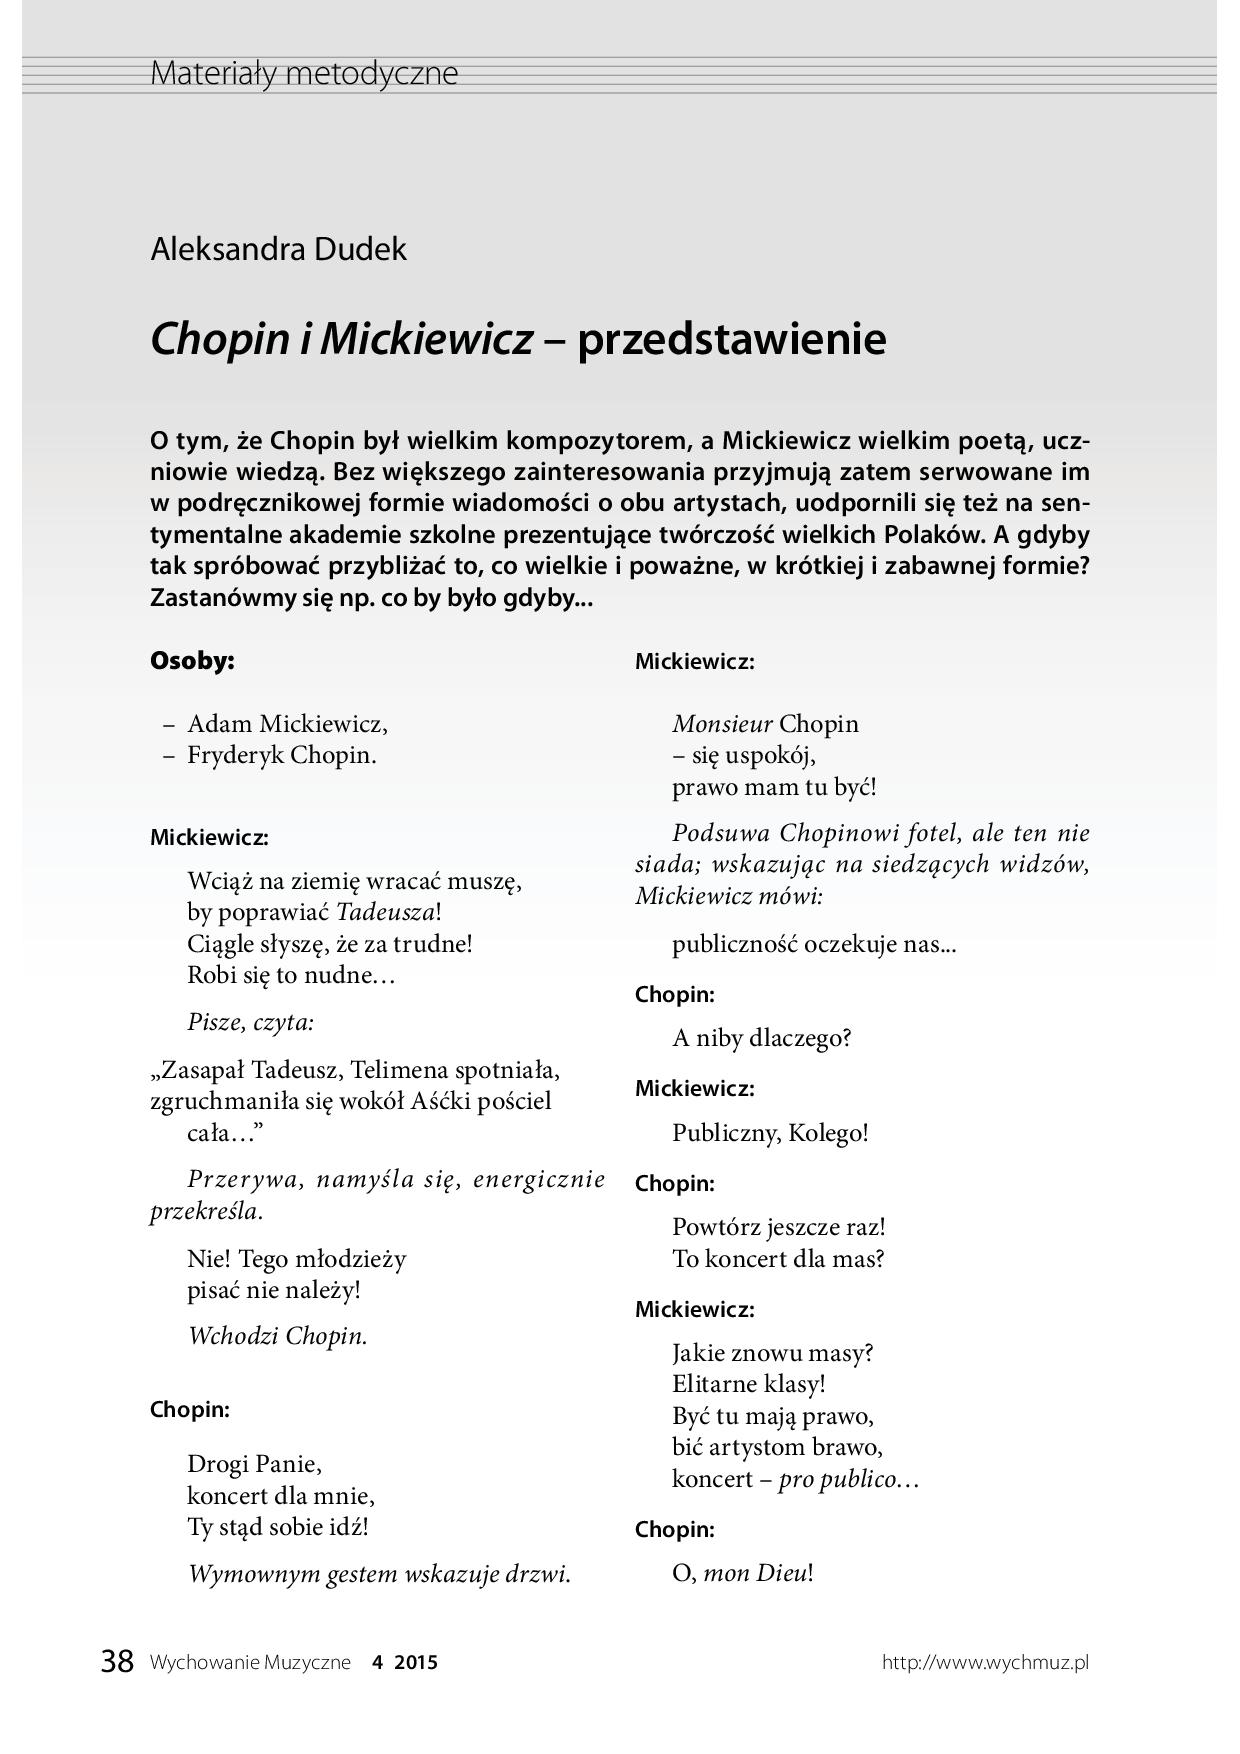 Chopin i Mickiewicz – przedstawienie